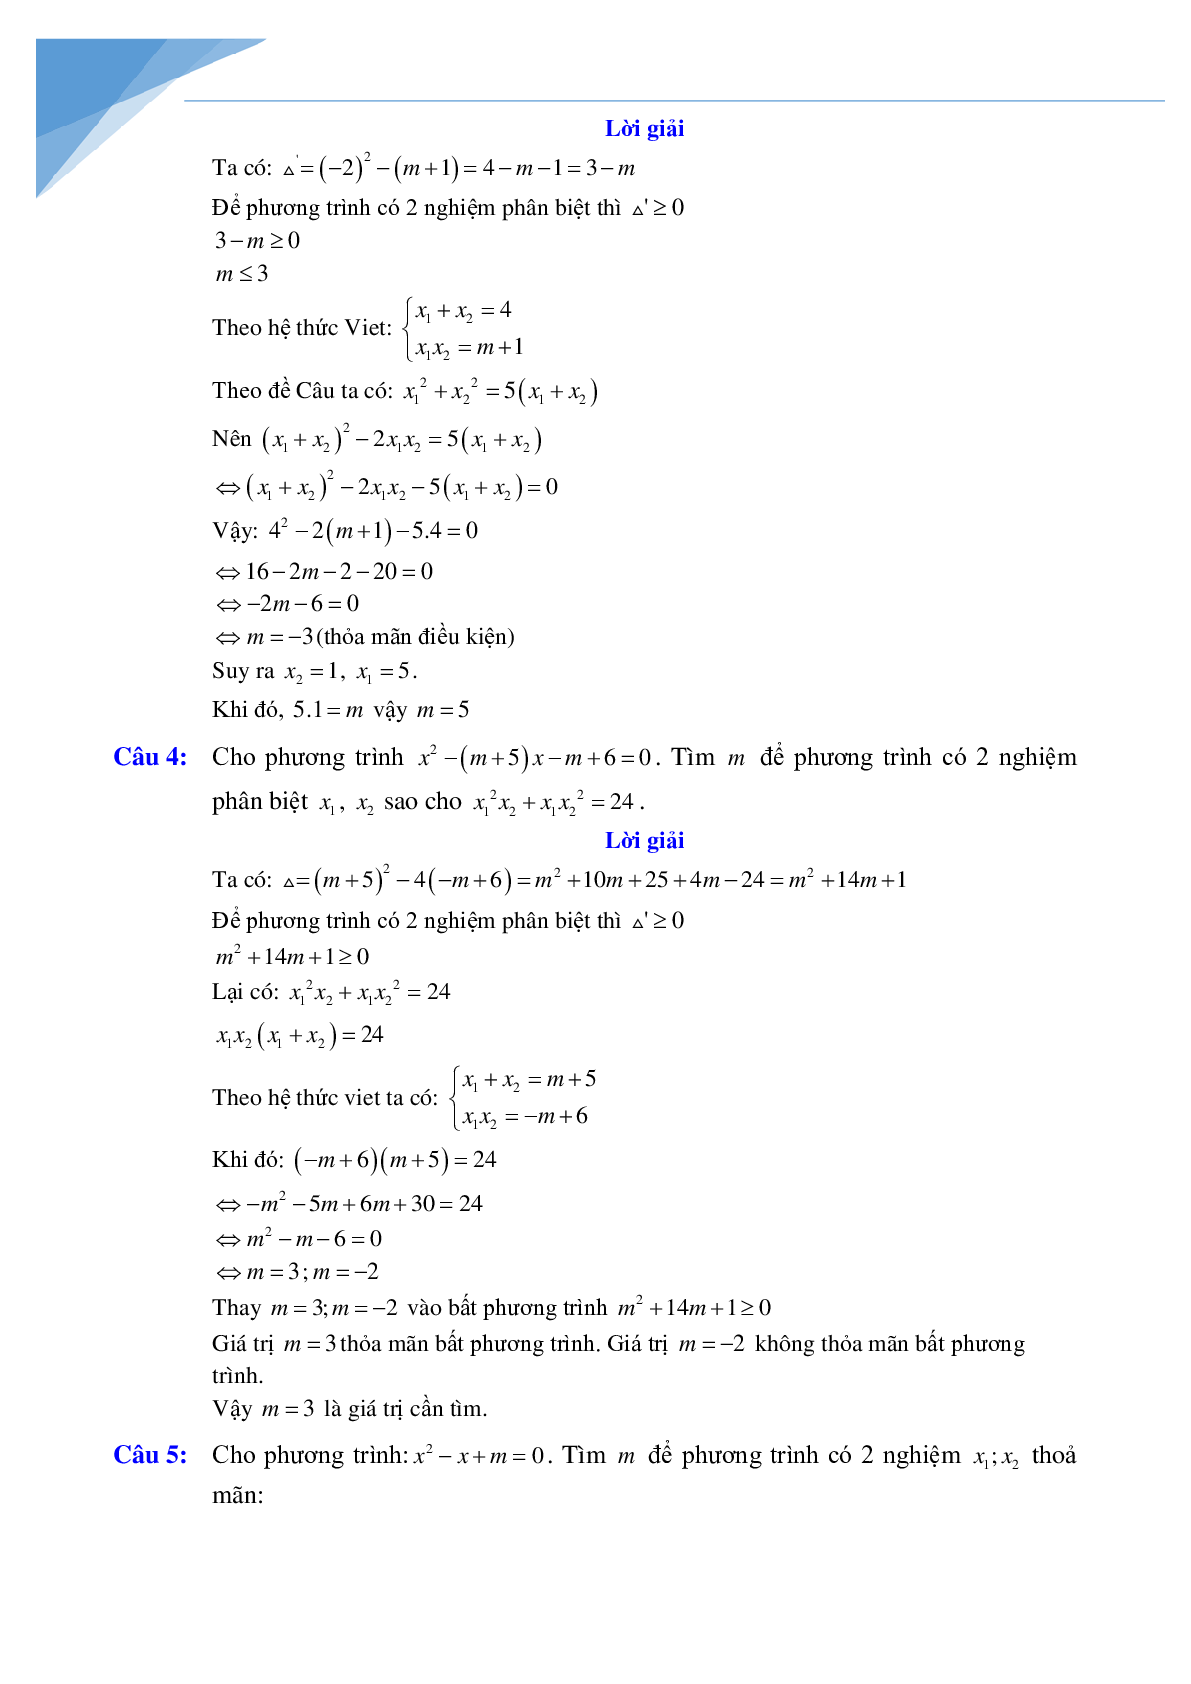 Chuyên đề vi-et luyện thi vào lớp 10 môn toán (trang 5)